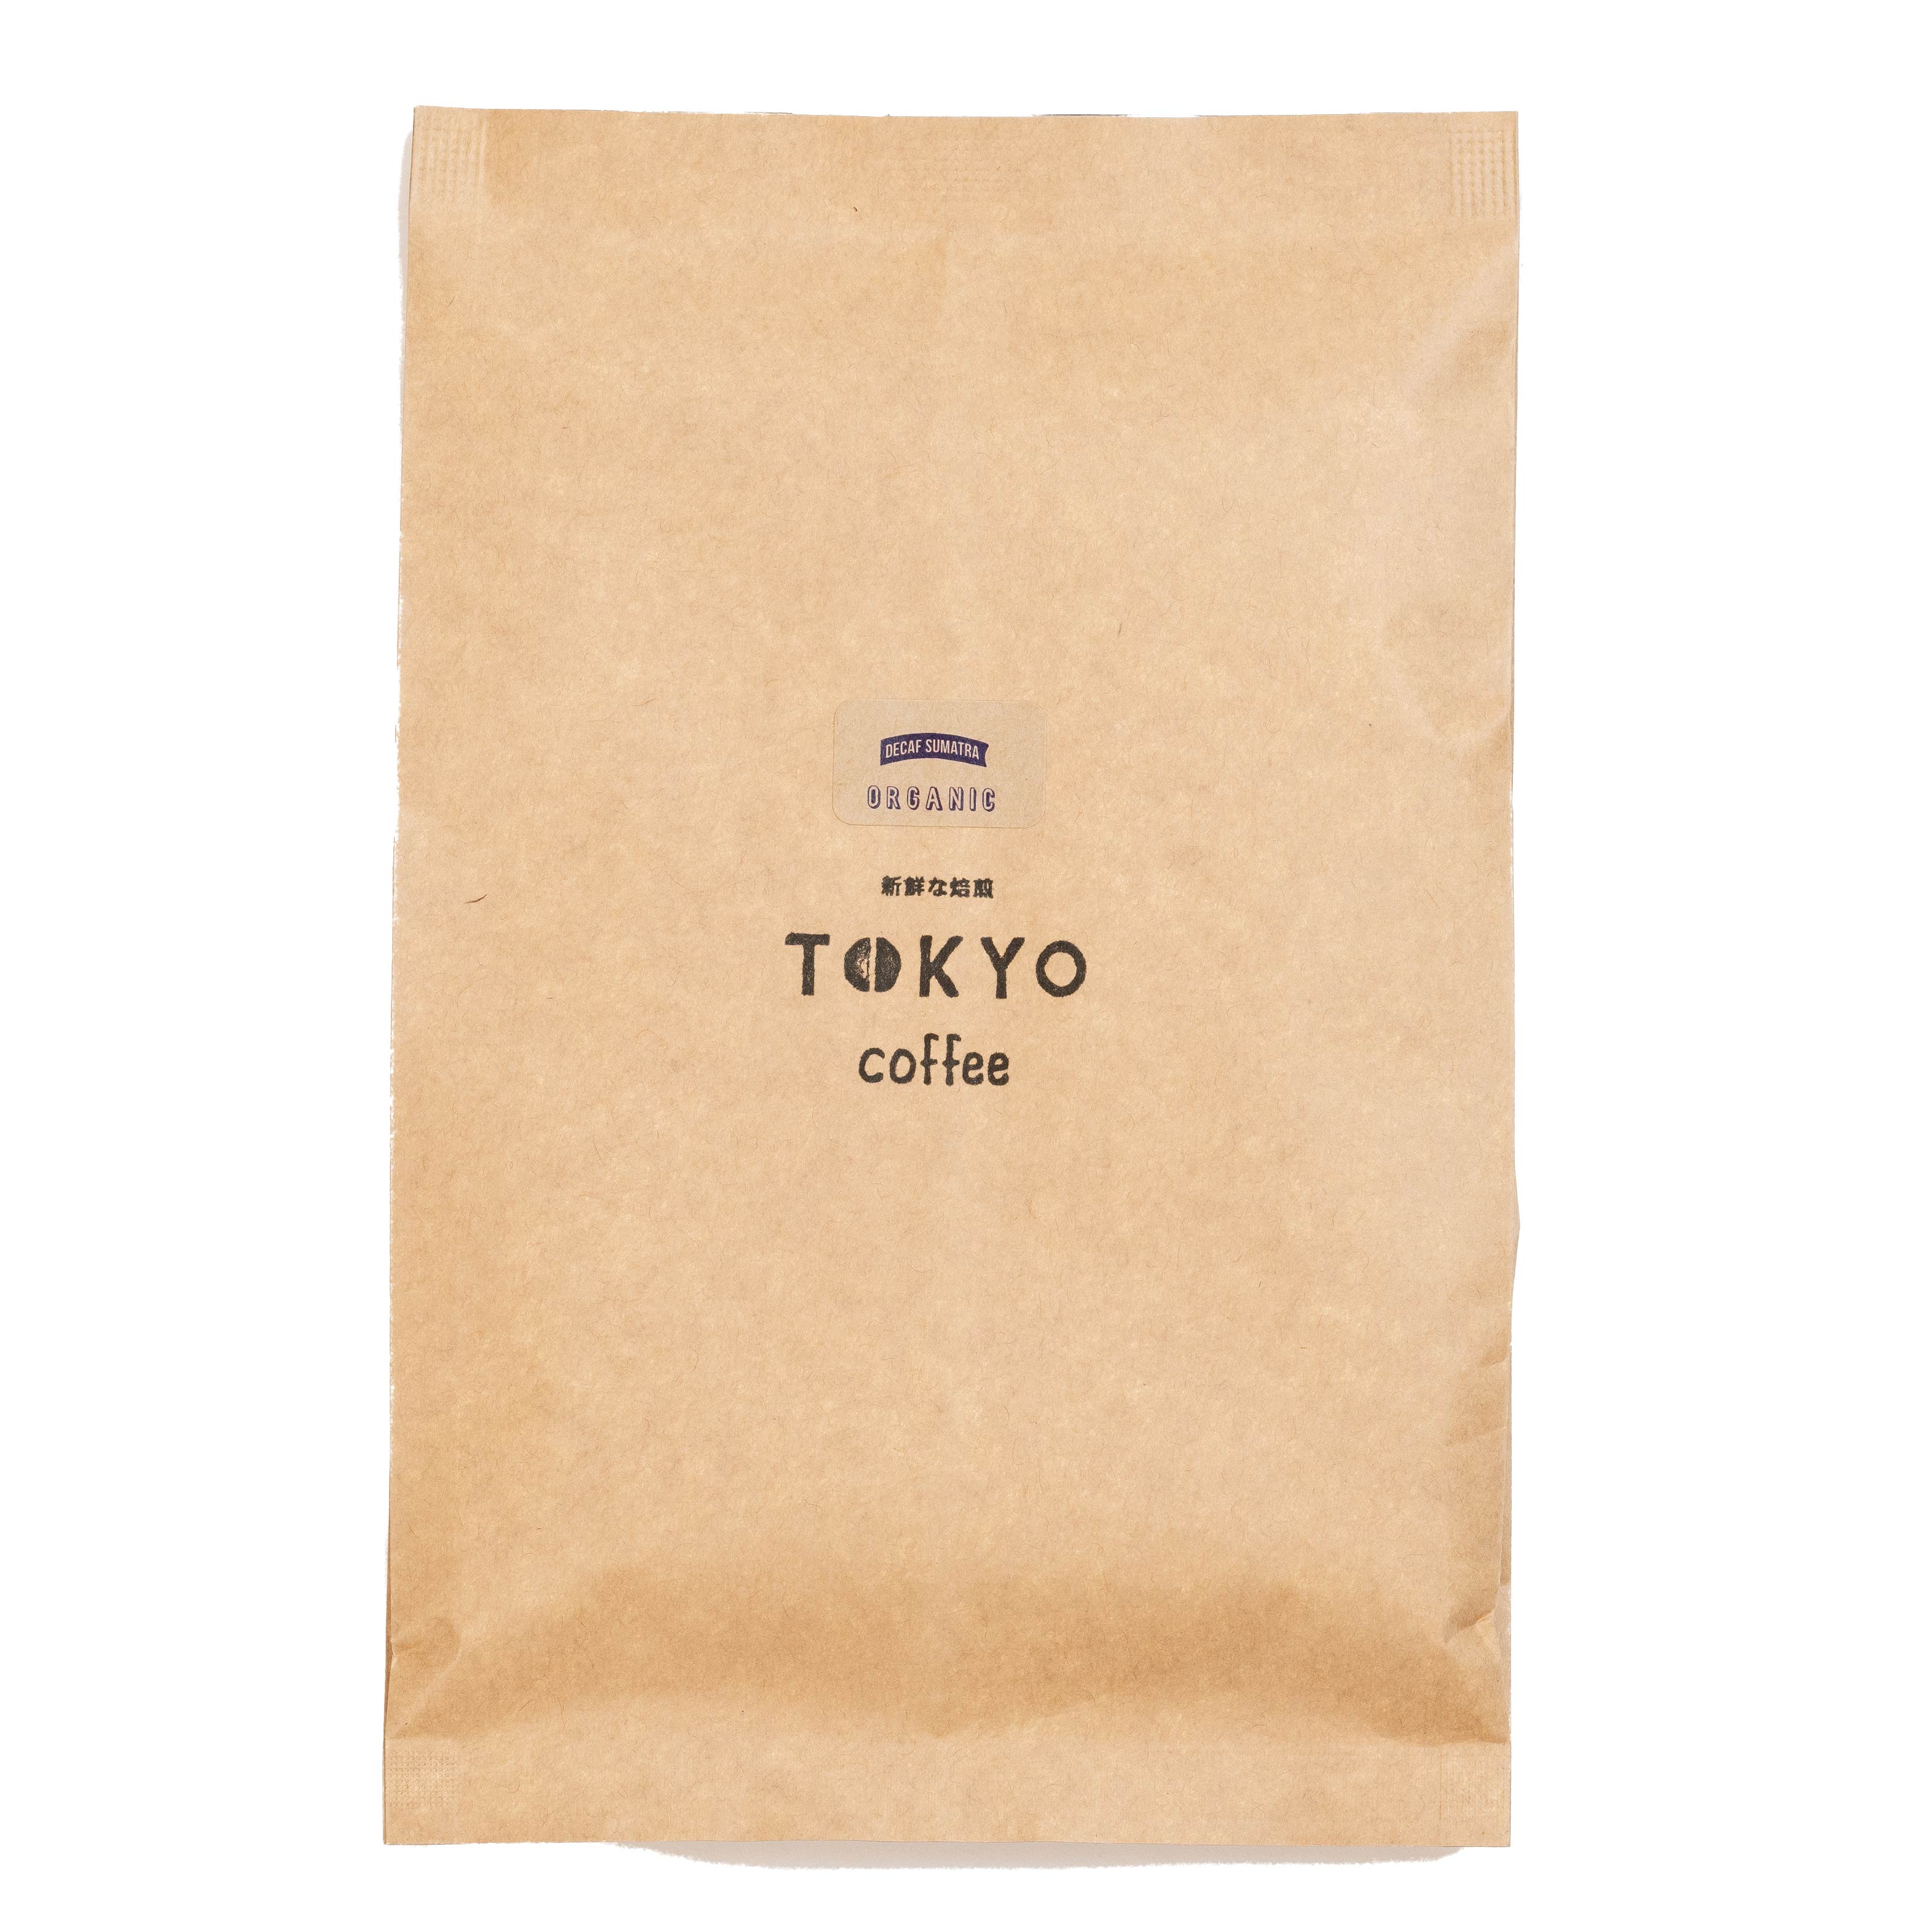 TOKYO COFFEE オーガニック コーヒー シングルオリジンデカフェ スマトラ 400g  400gでコーヒー約28杯分｜カフェインレス オーガニック コーヒー 豆 有機コーヒー豆 カフェインレス コーヒー豆 カフェインレス 珈琲豆 有機珈琲 caffeineless